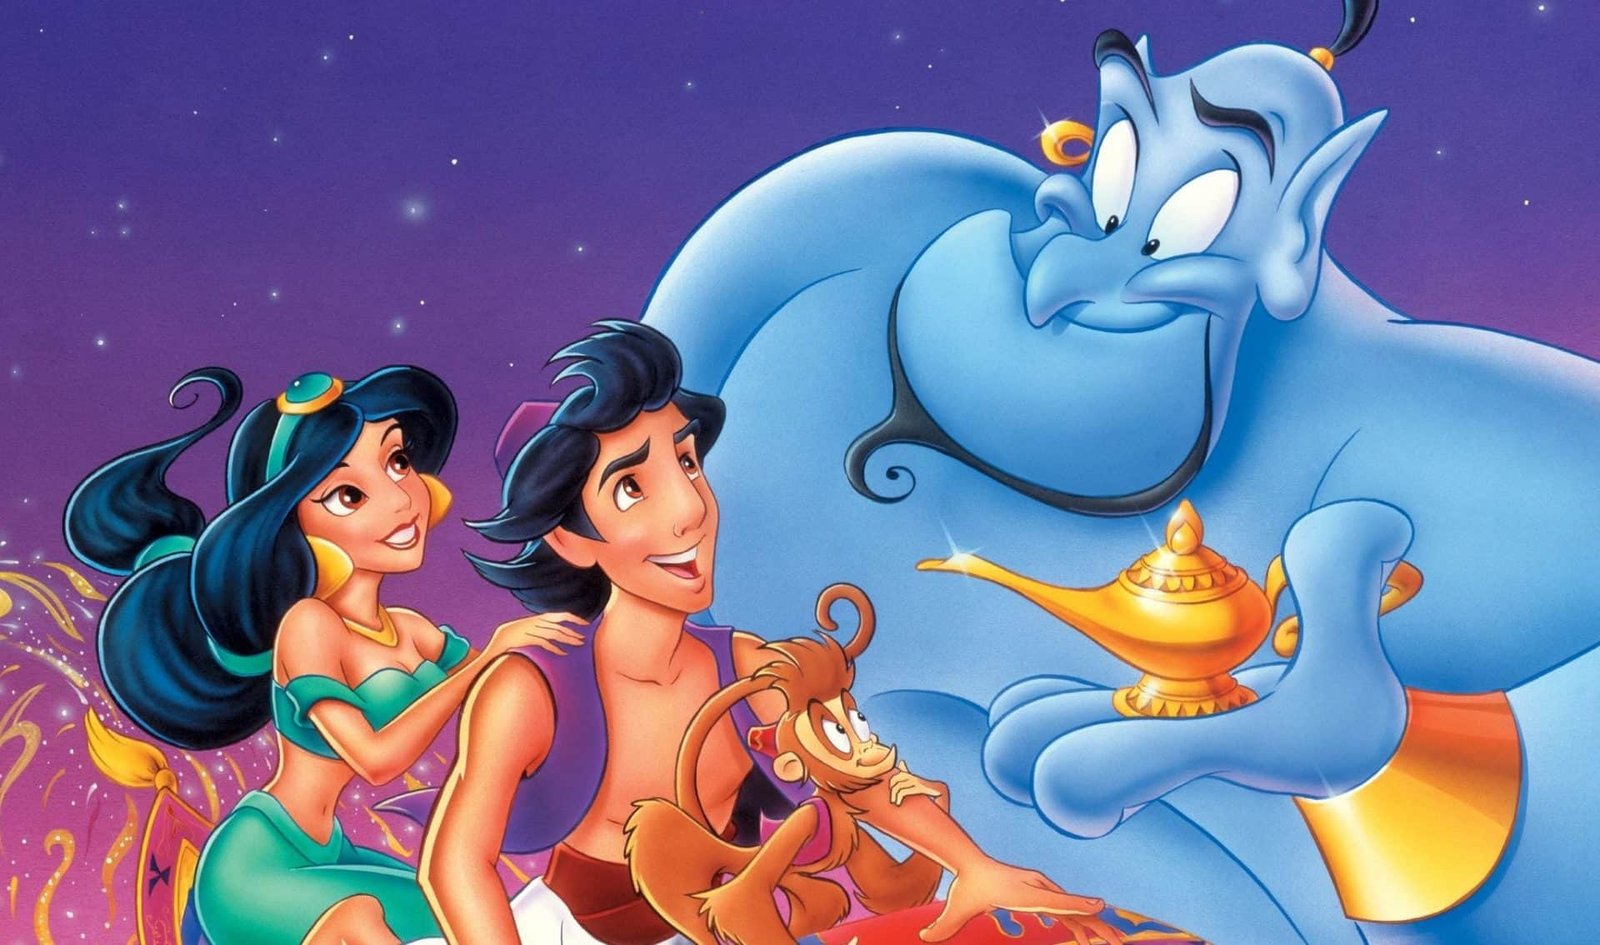 Image promotionnelle représentant des personnages d'Aladdin de Disney, notamment Aladdin, la princesse Jasmine, le Génie et Abu, avec une lampe magique sur un ciel étoilé.